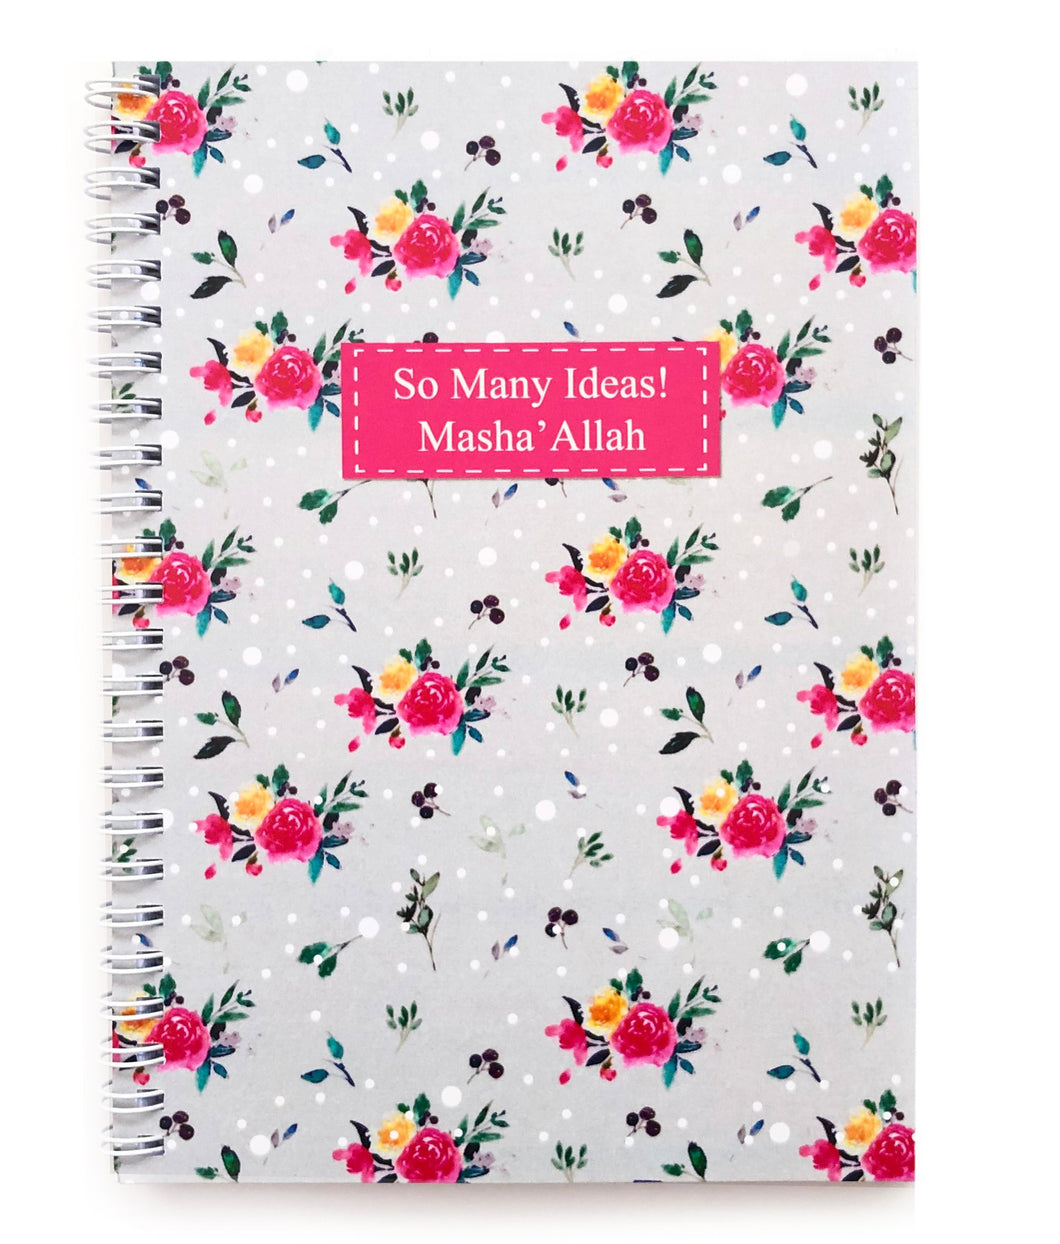 So Many Ideas! Masha'Allah - Wiro Notebook